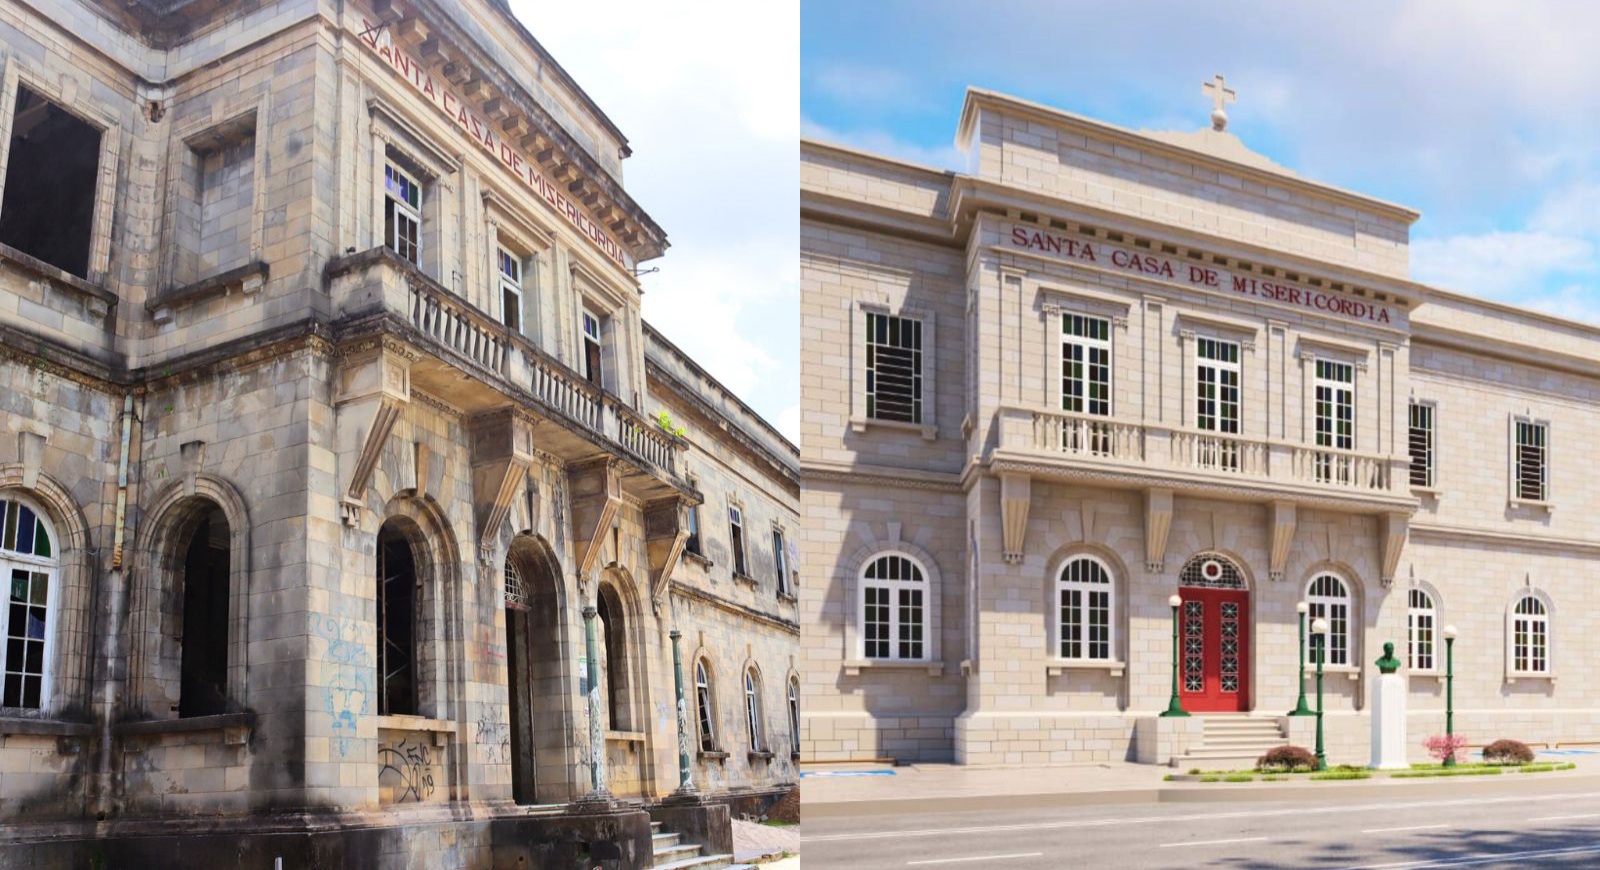 O renascimento de uma instituição histórica’, Maria do Carmo revela detalhes do restauro da Santa Casa de Misericórdia